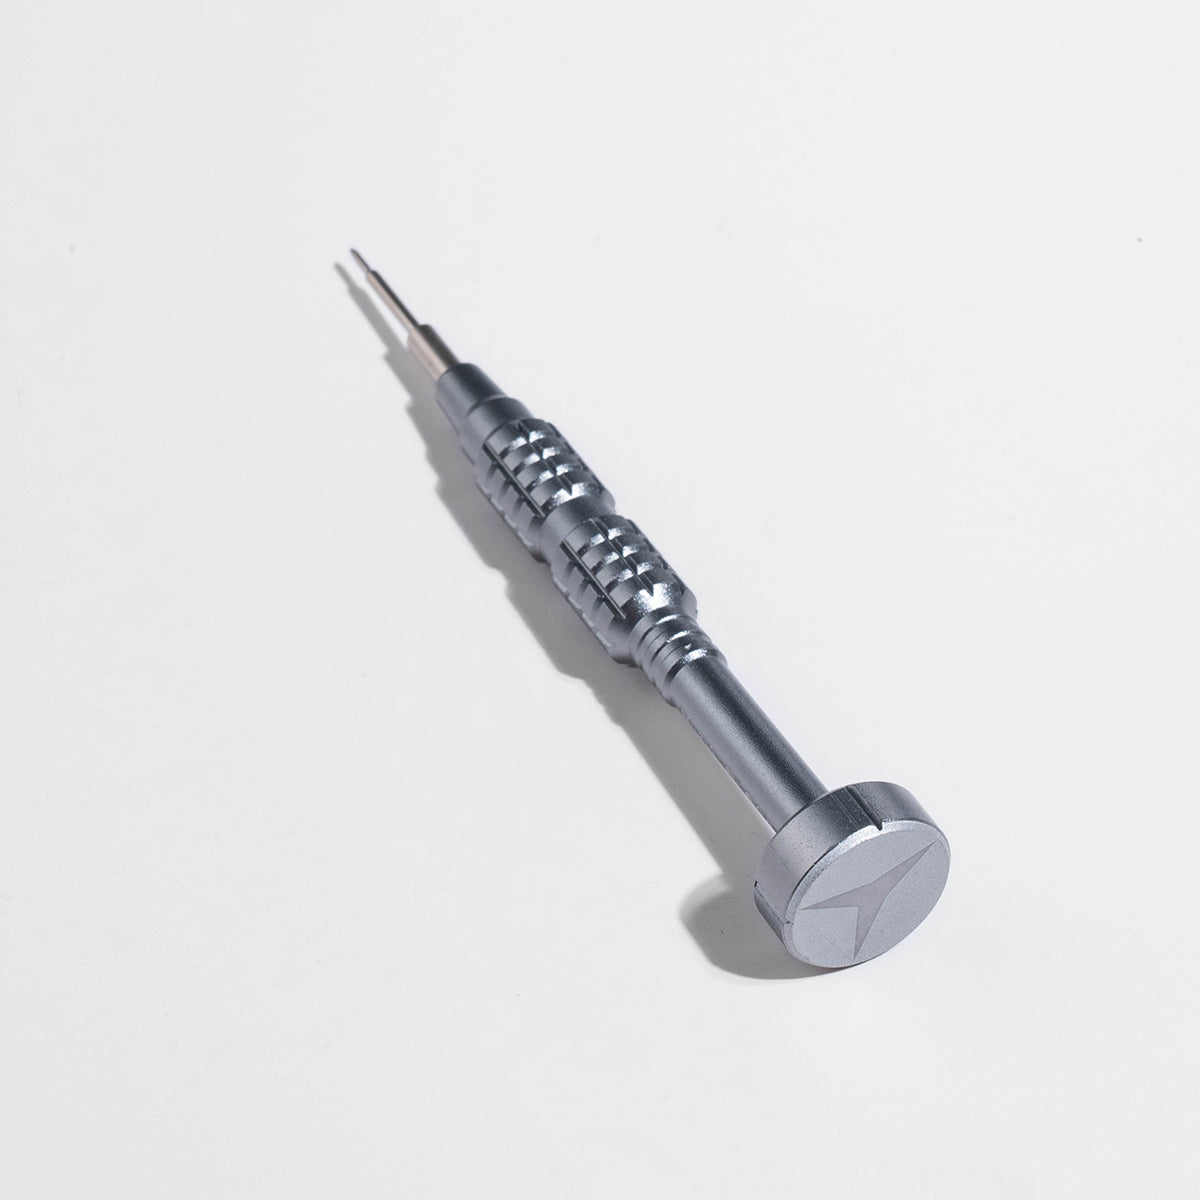 Screwdriver Precision Repair Tool Kit for iPhone Repair